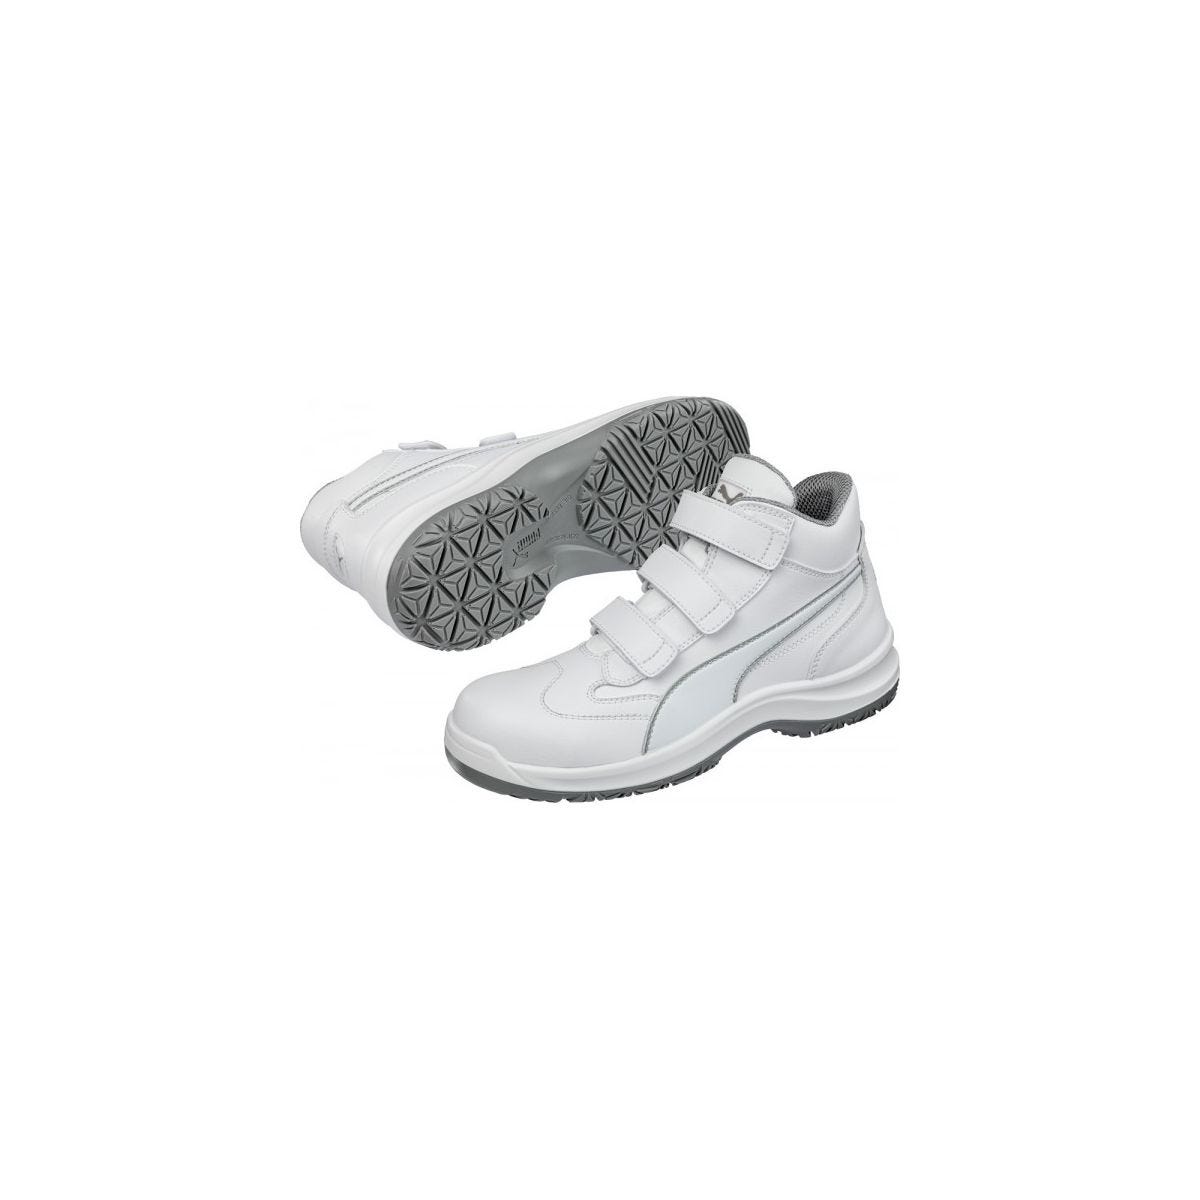 Chaussures de sécurité Absolute Mid S2 Blanc - Puma - Taille 47 2